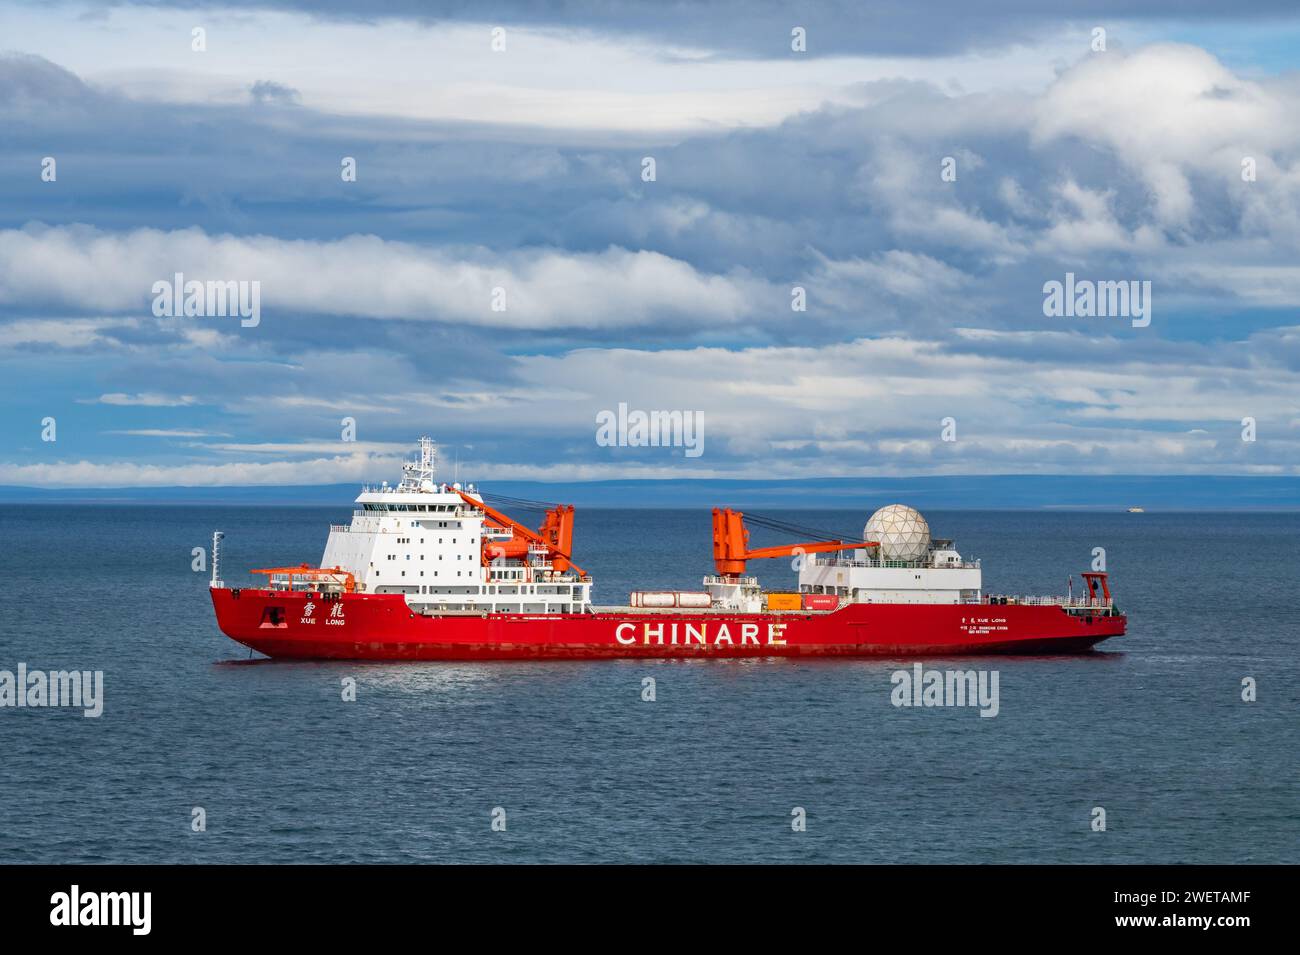 Navire de recherche polaire chinois brise-glace Xue long 雪龙 ancré dans les eaux d'Ushuaia, Tierra del Fuego, Argentine. Banque D'Images